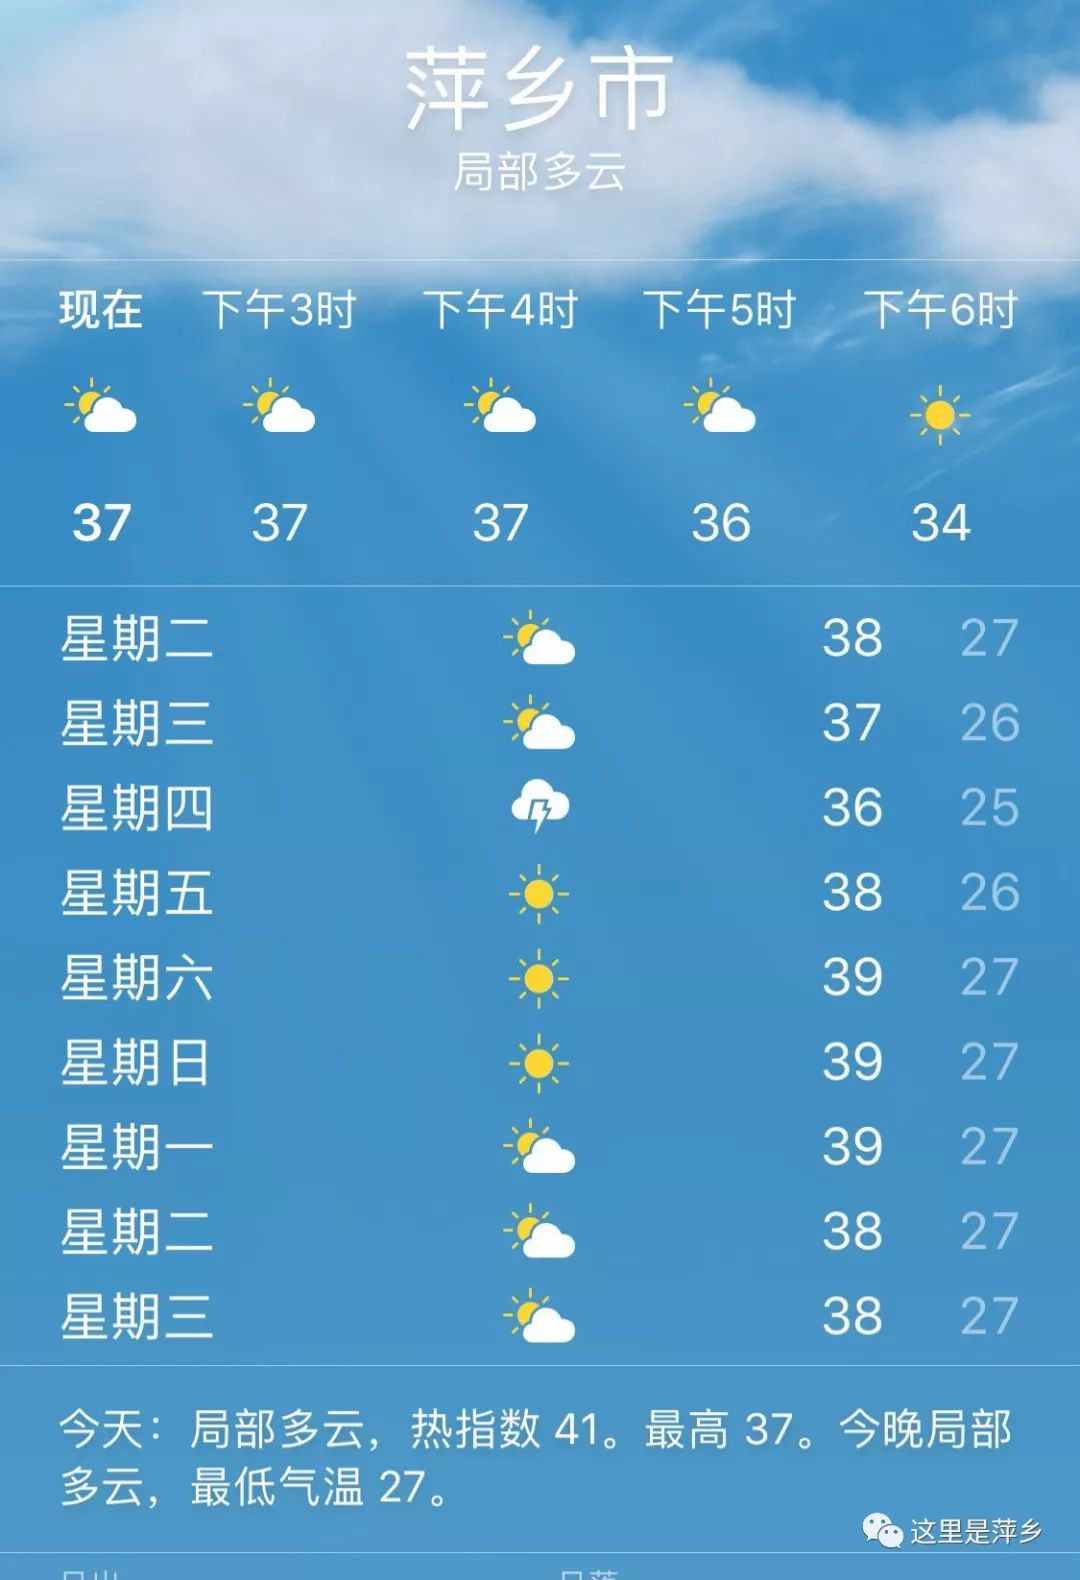 景德镇,鹰潭气温都纷纷退到了高温线以下,但大部分 地区的高温天气仍